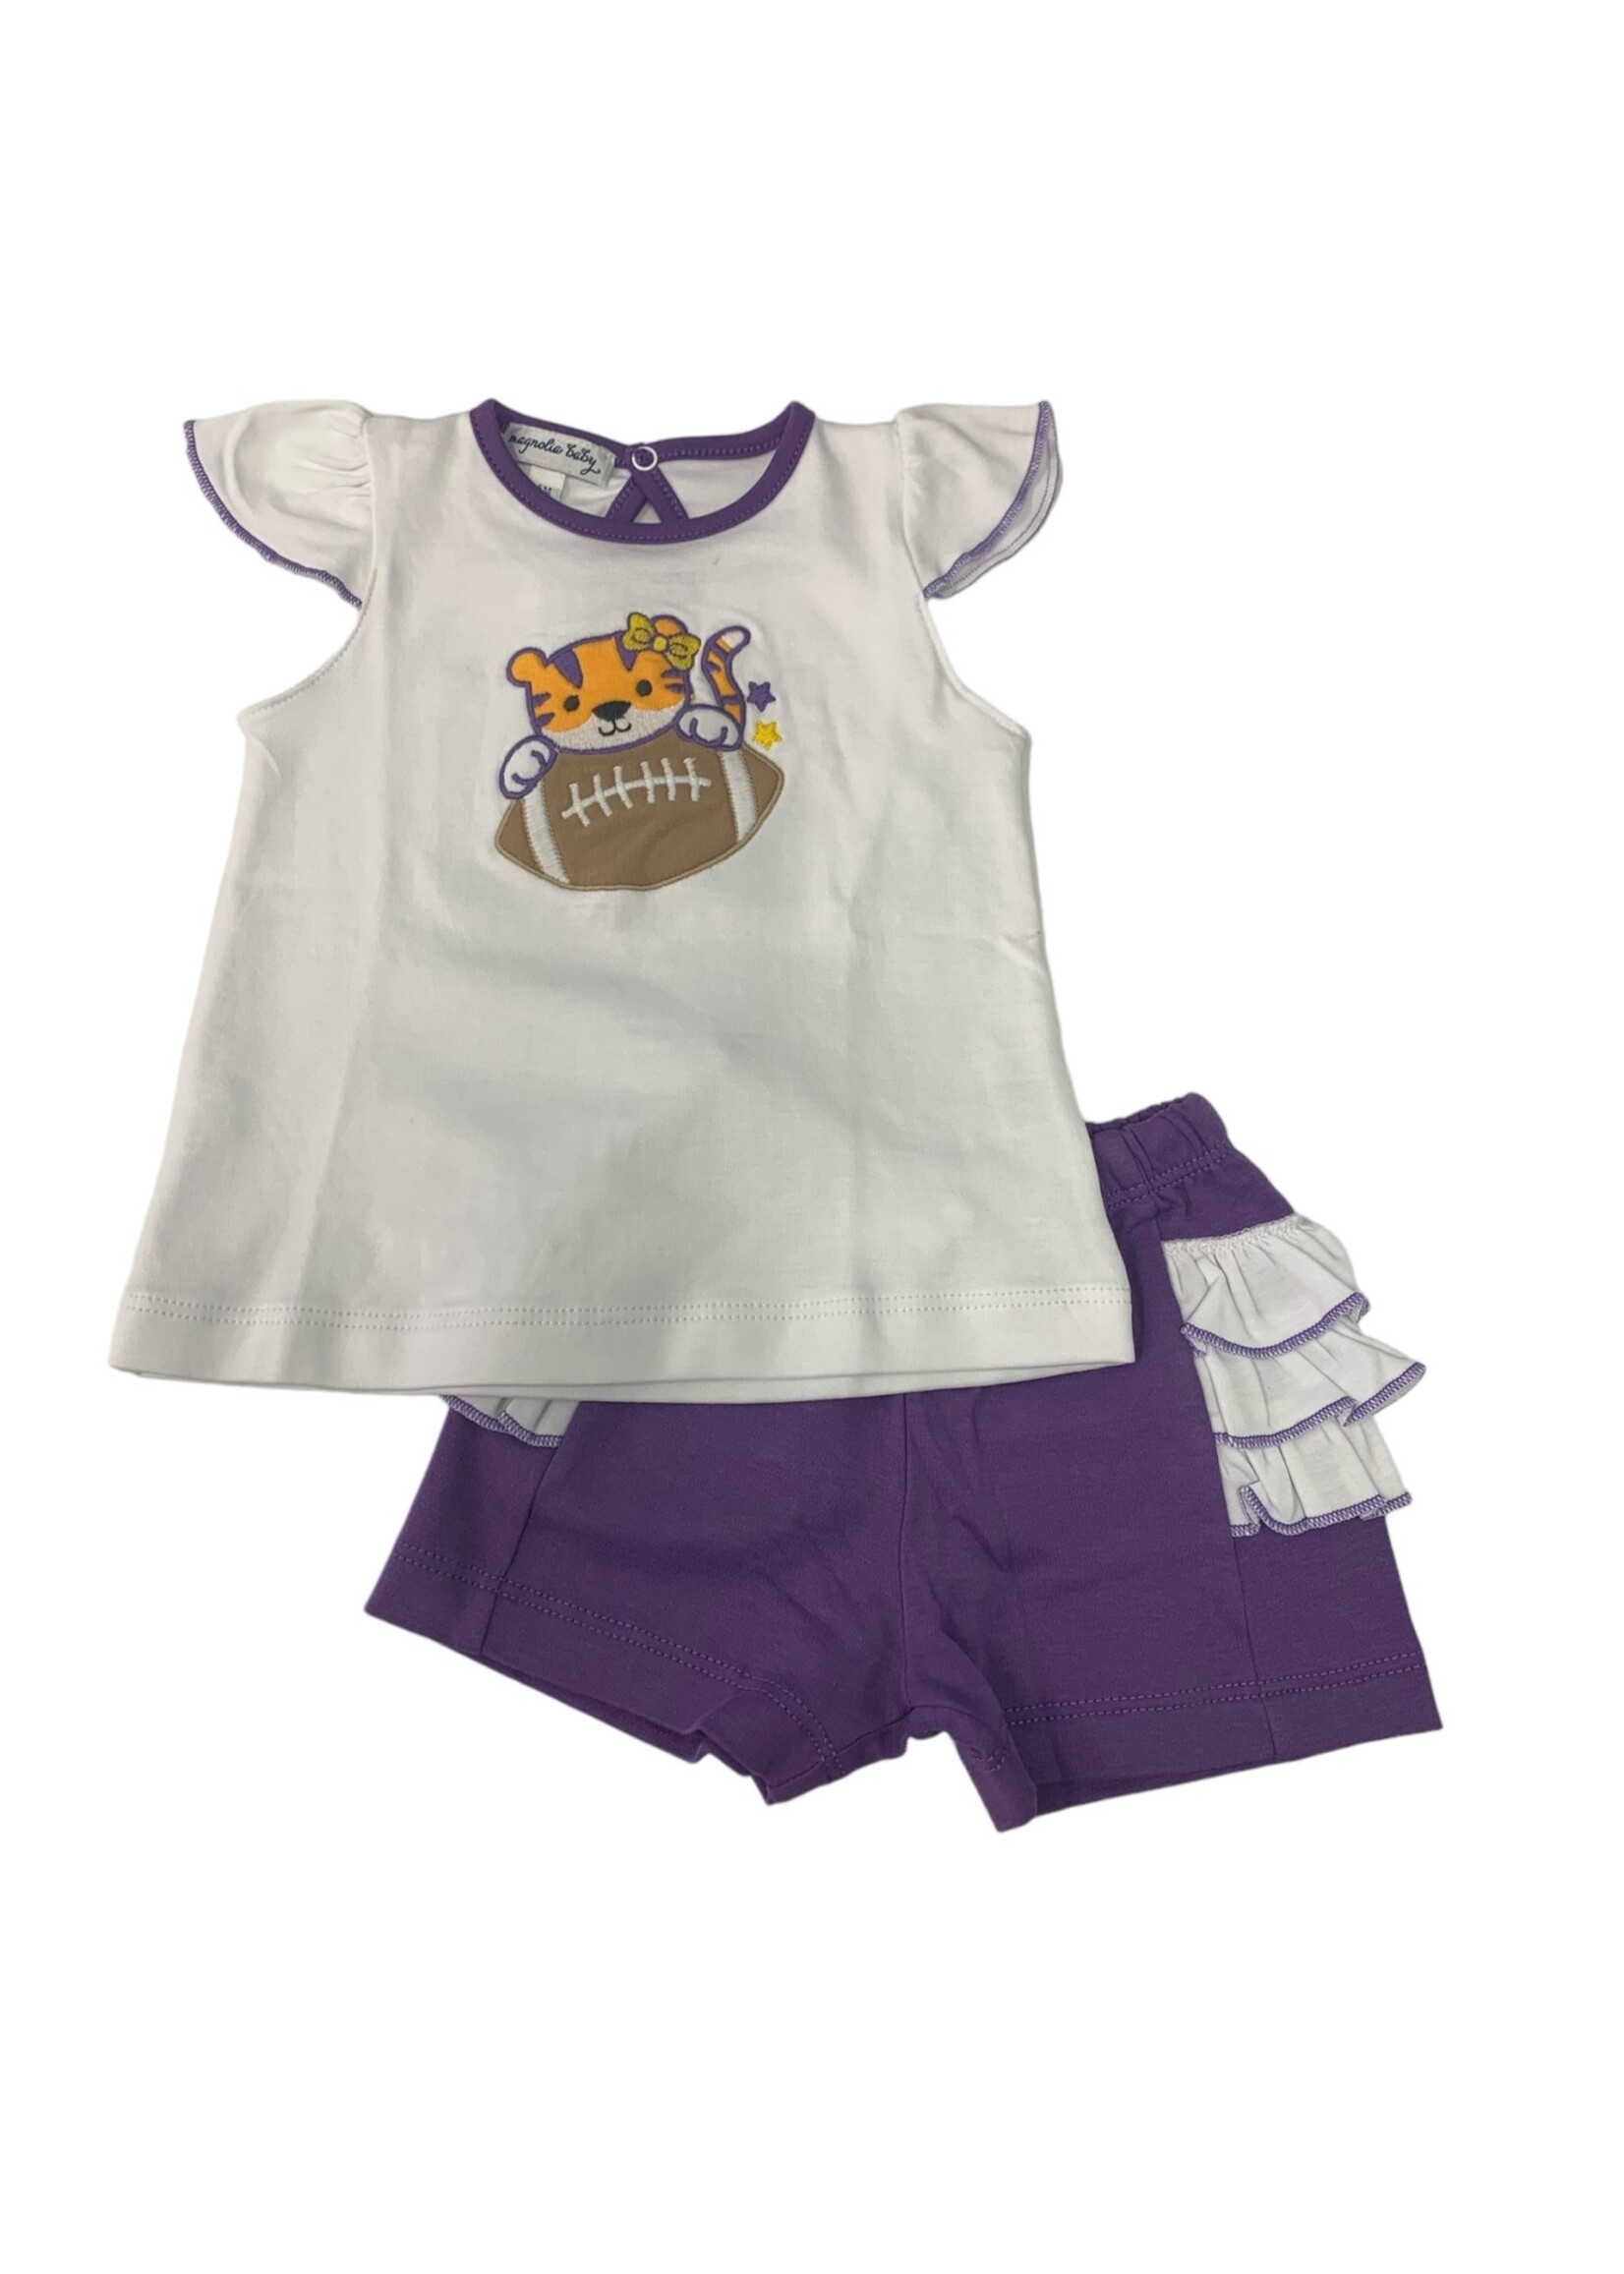 Magnolia Baby Tiger Football Applique Ruffle Toddler Short Set